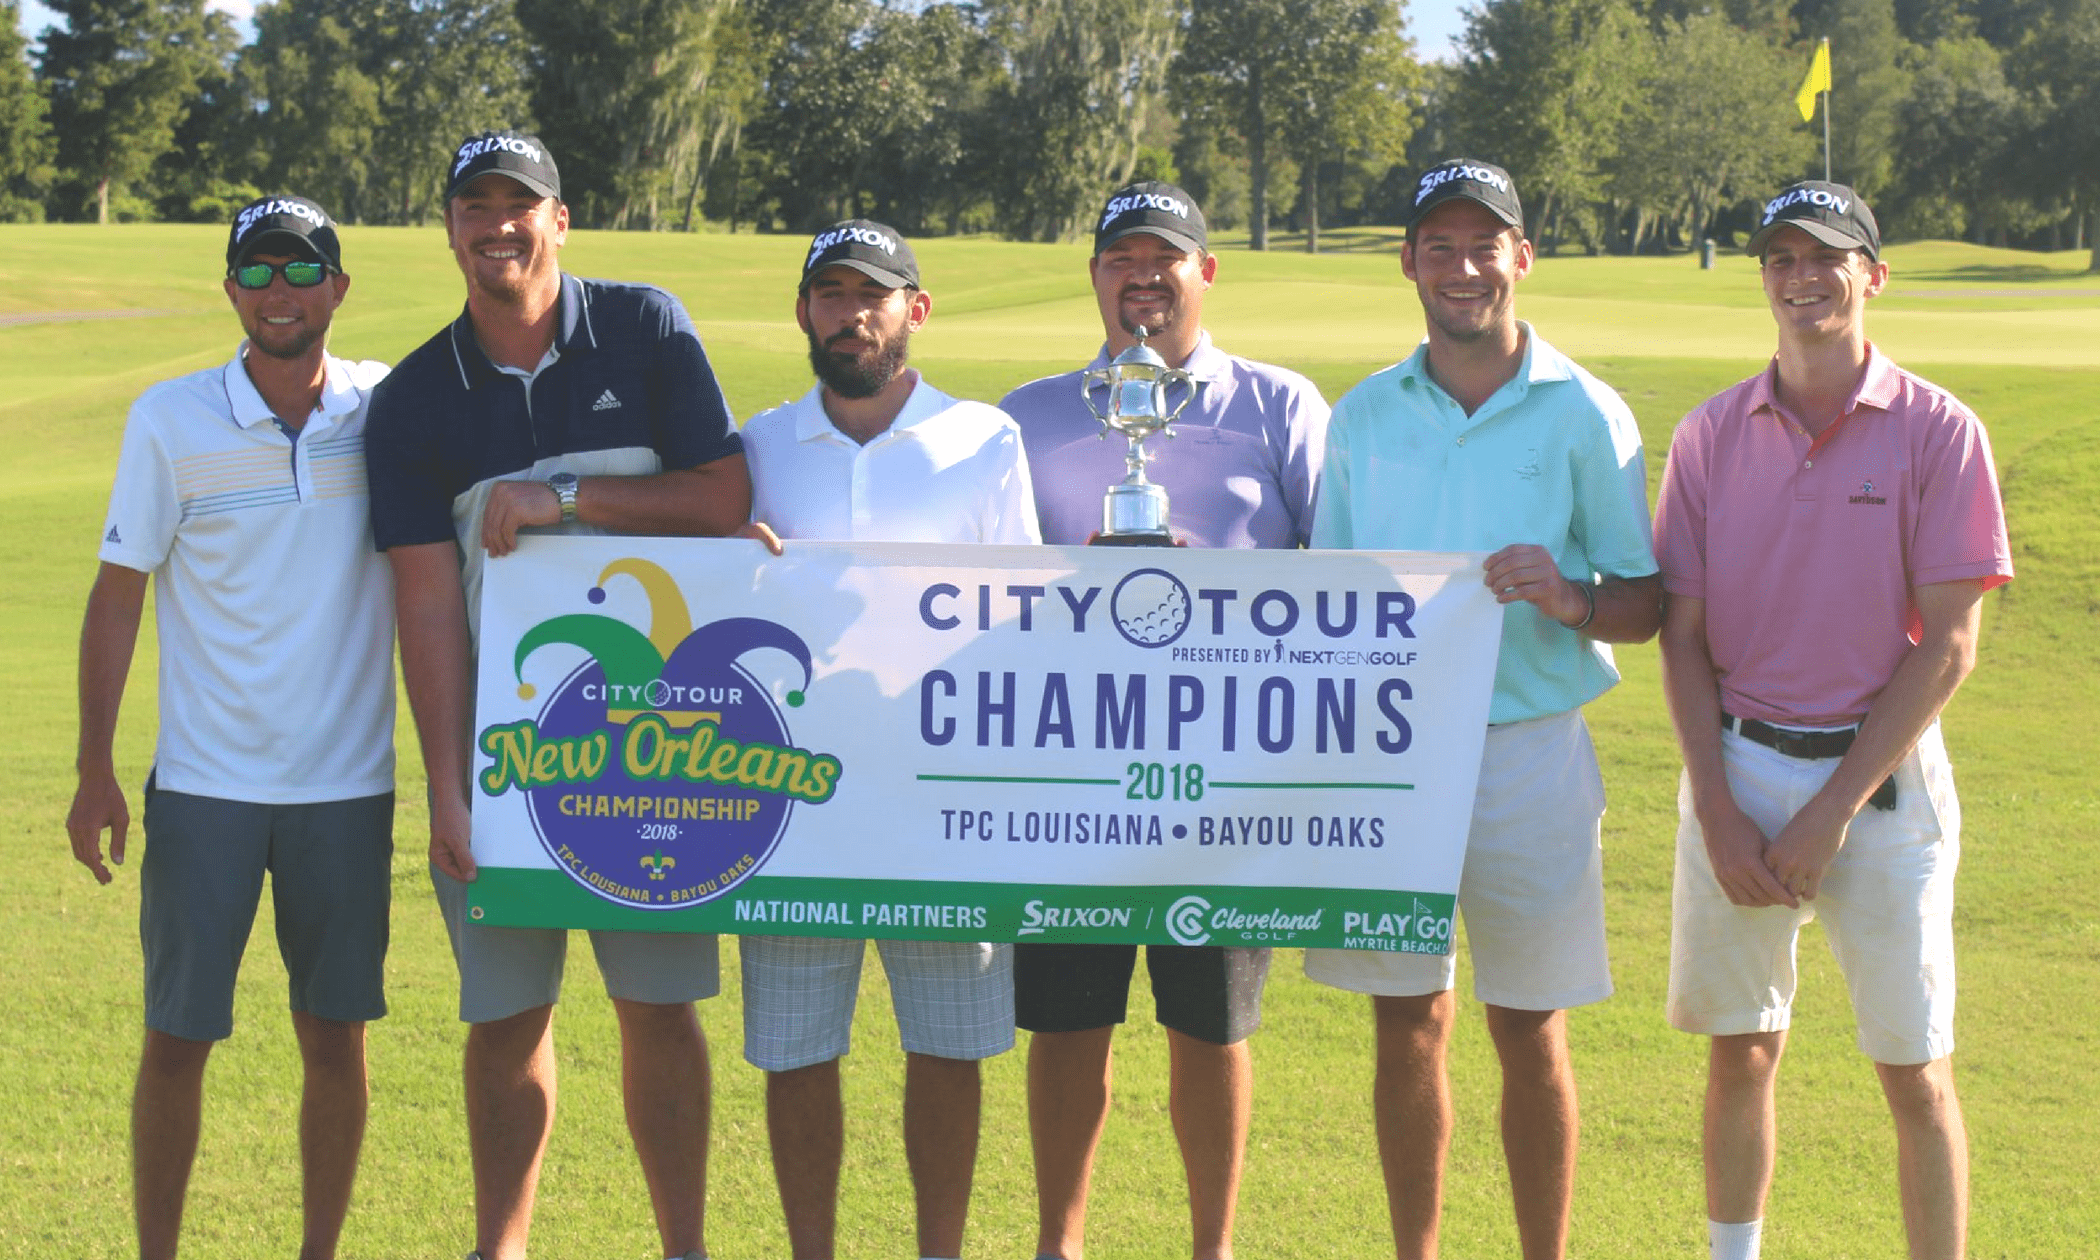 City Tour golf league